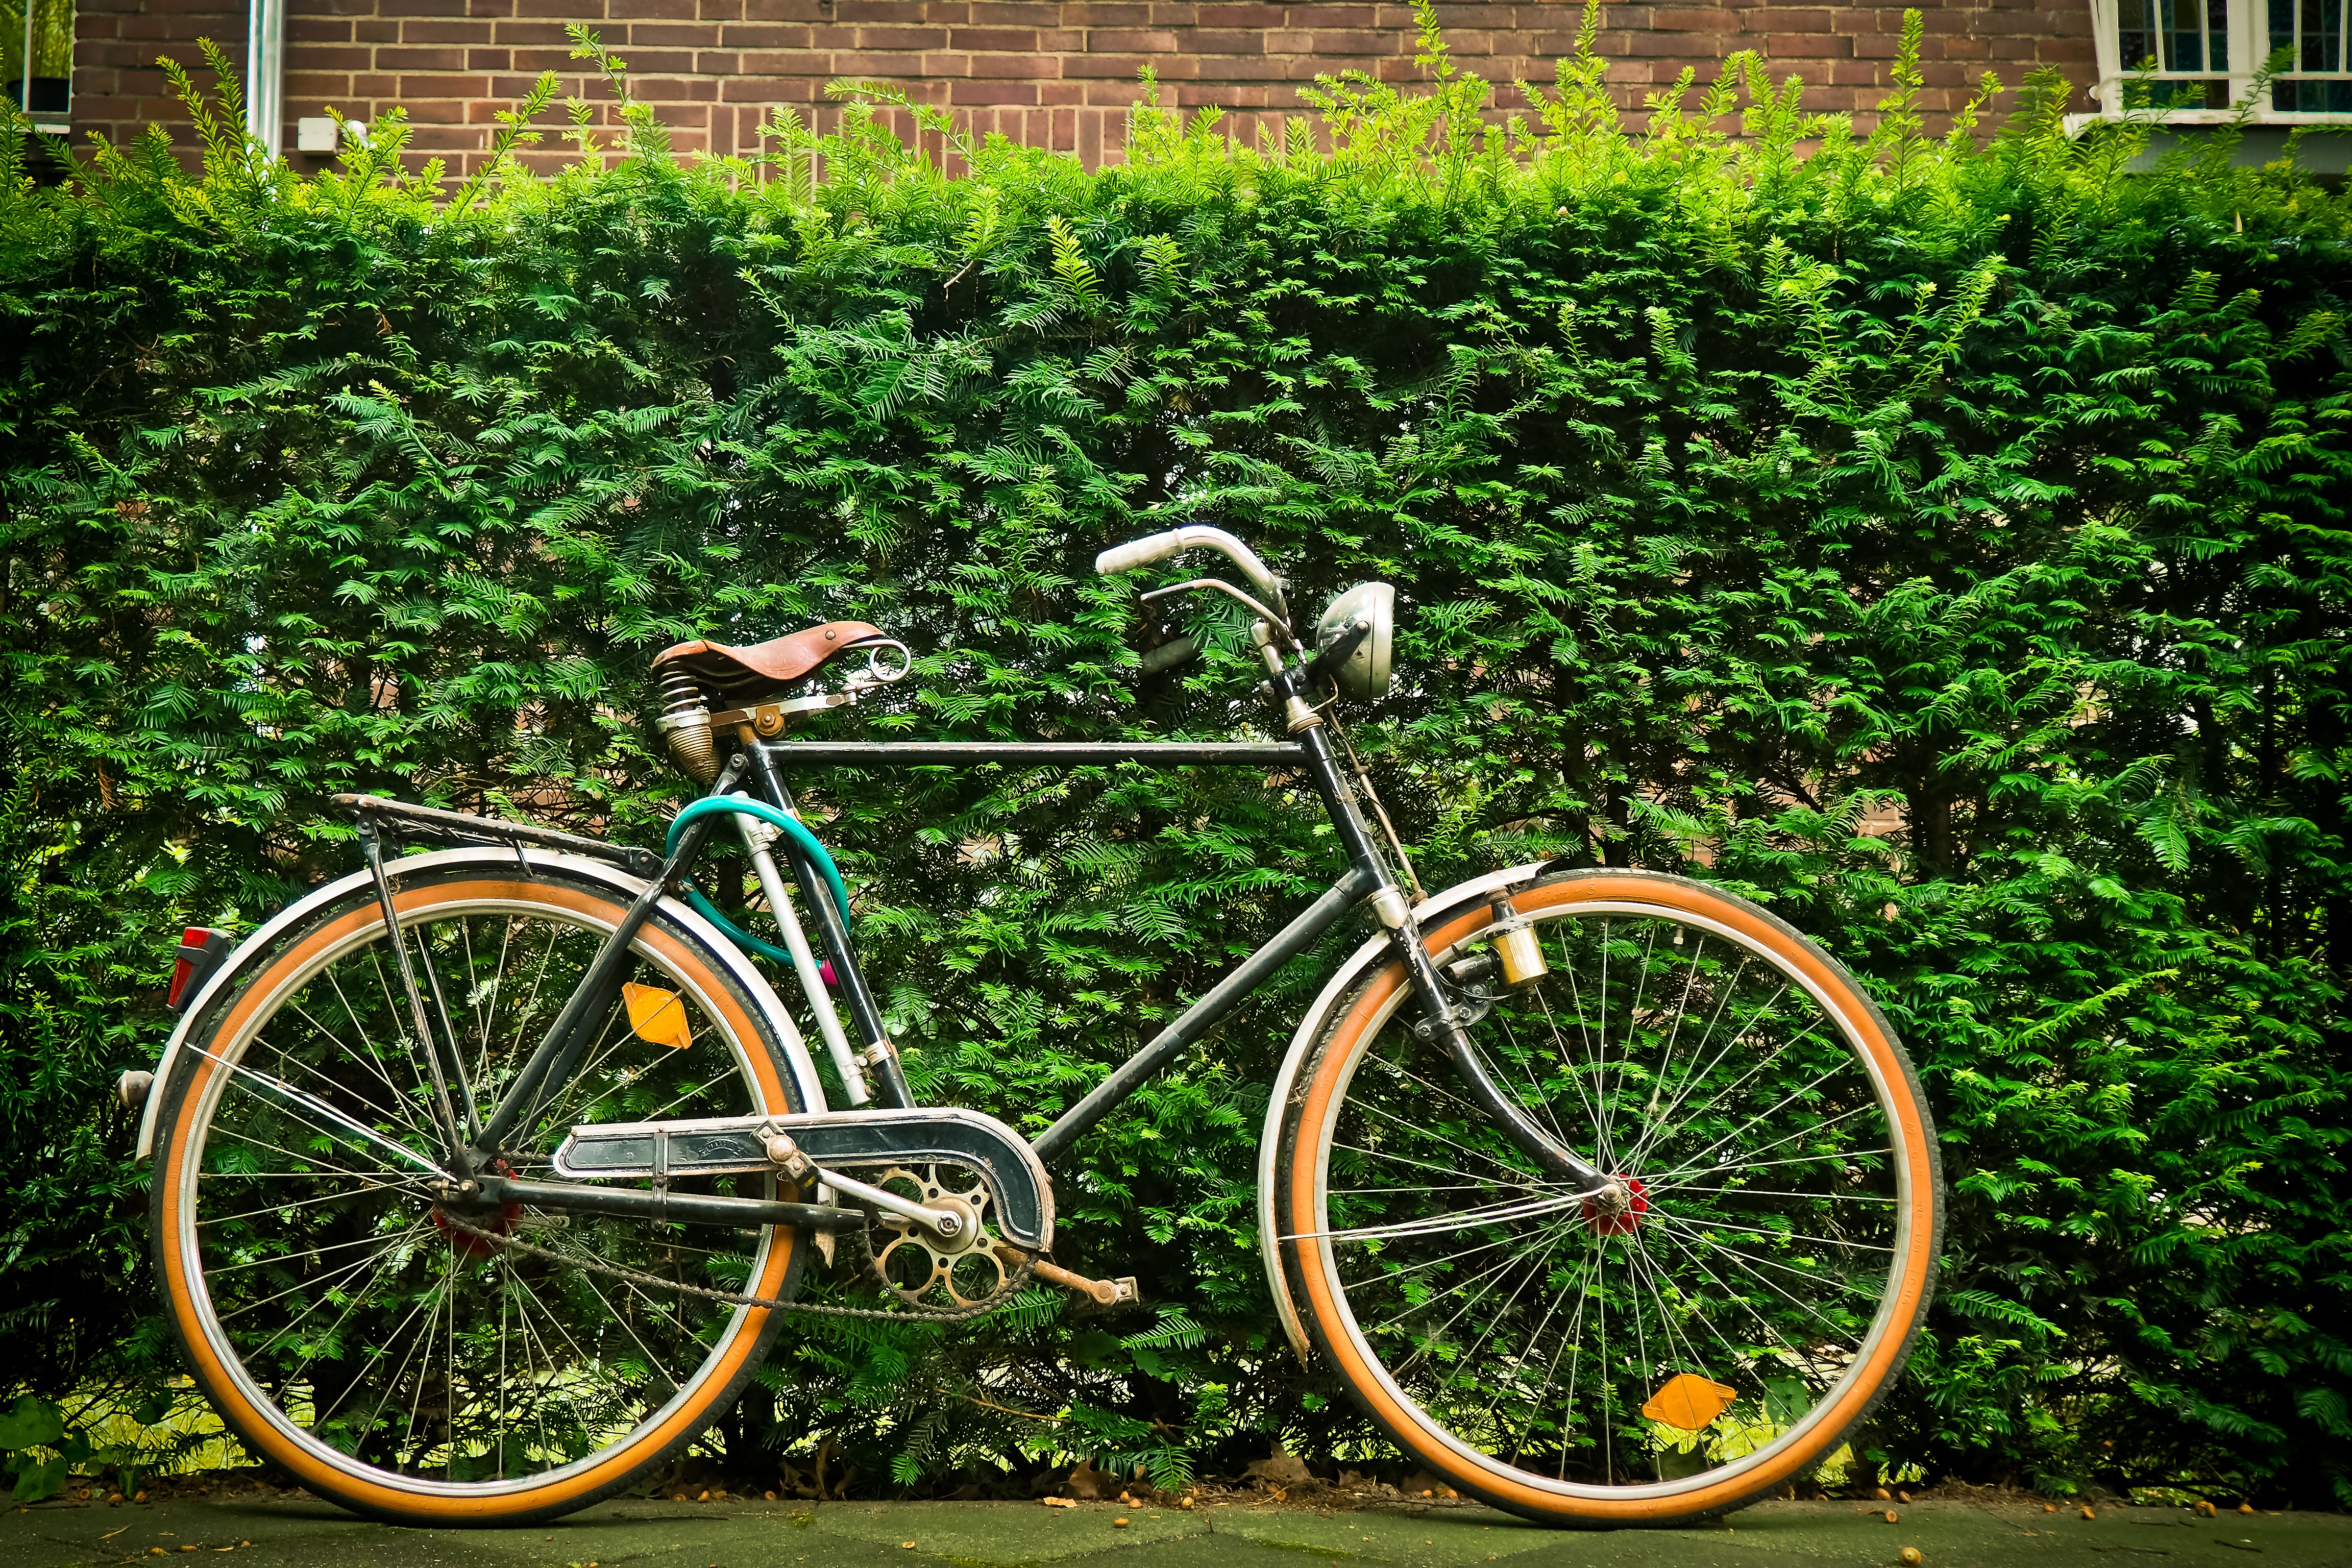 Free Images : vintage, wheel, old, green, soil, nostalgia, cycle ...